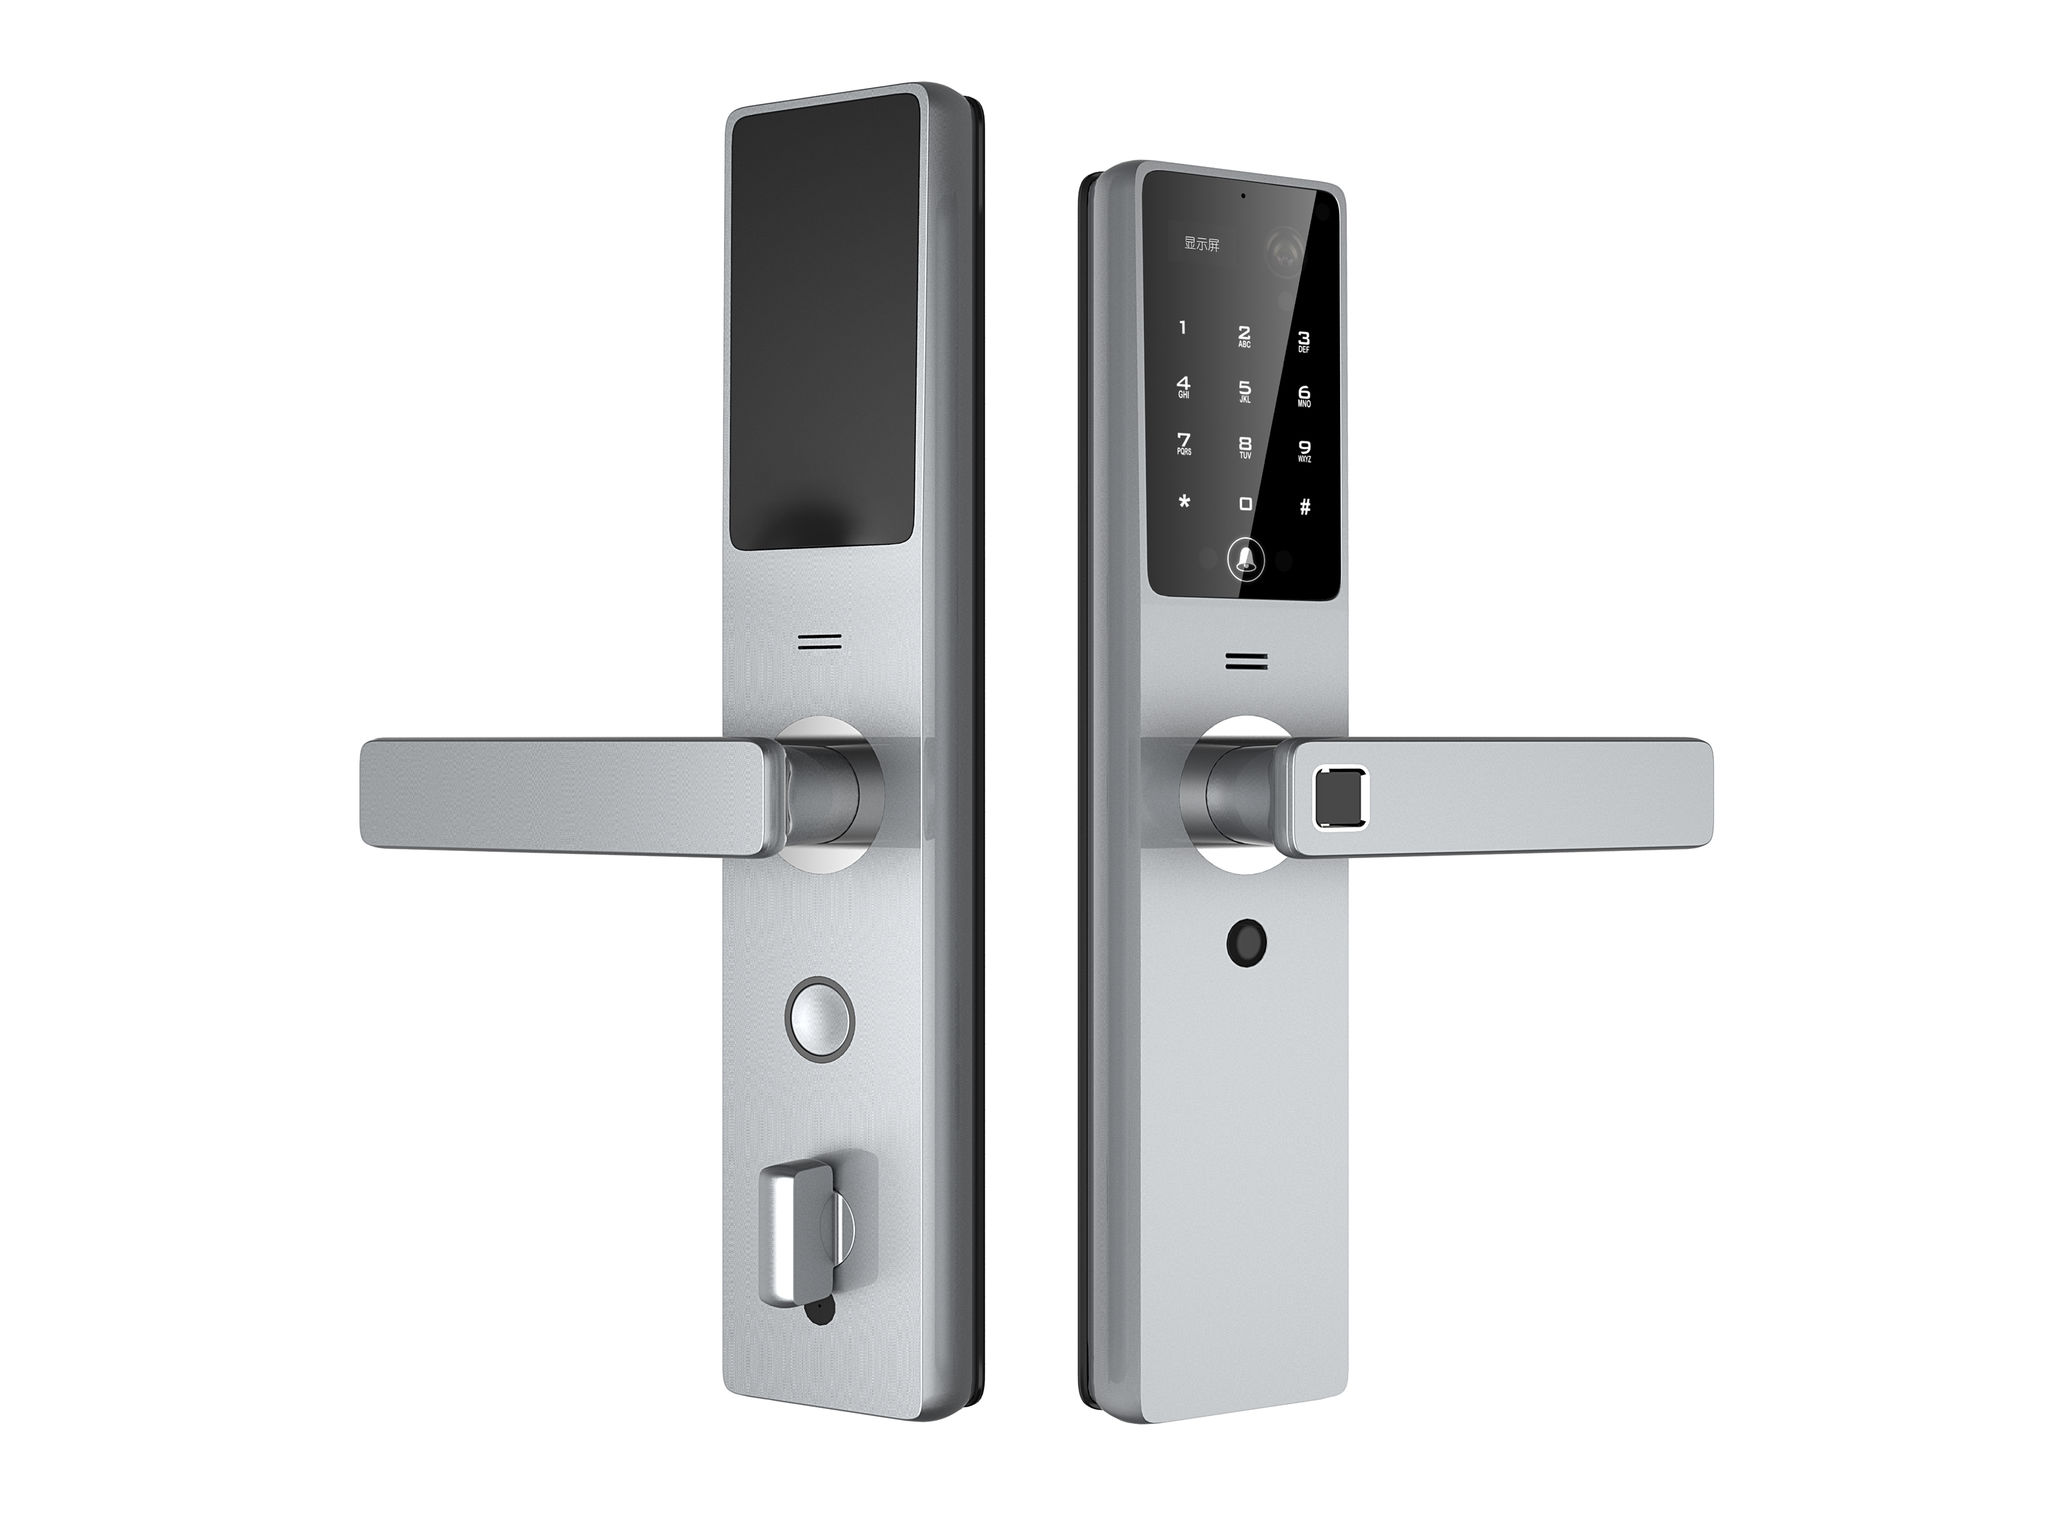 Smart Video Door Lock, Smart Video Door Lock